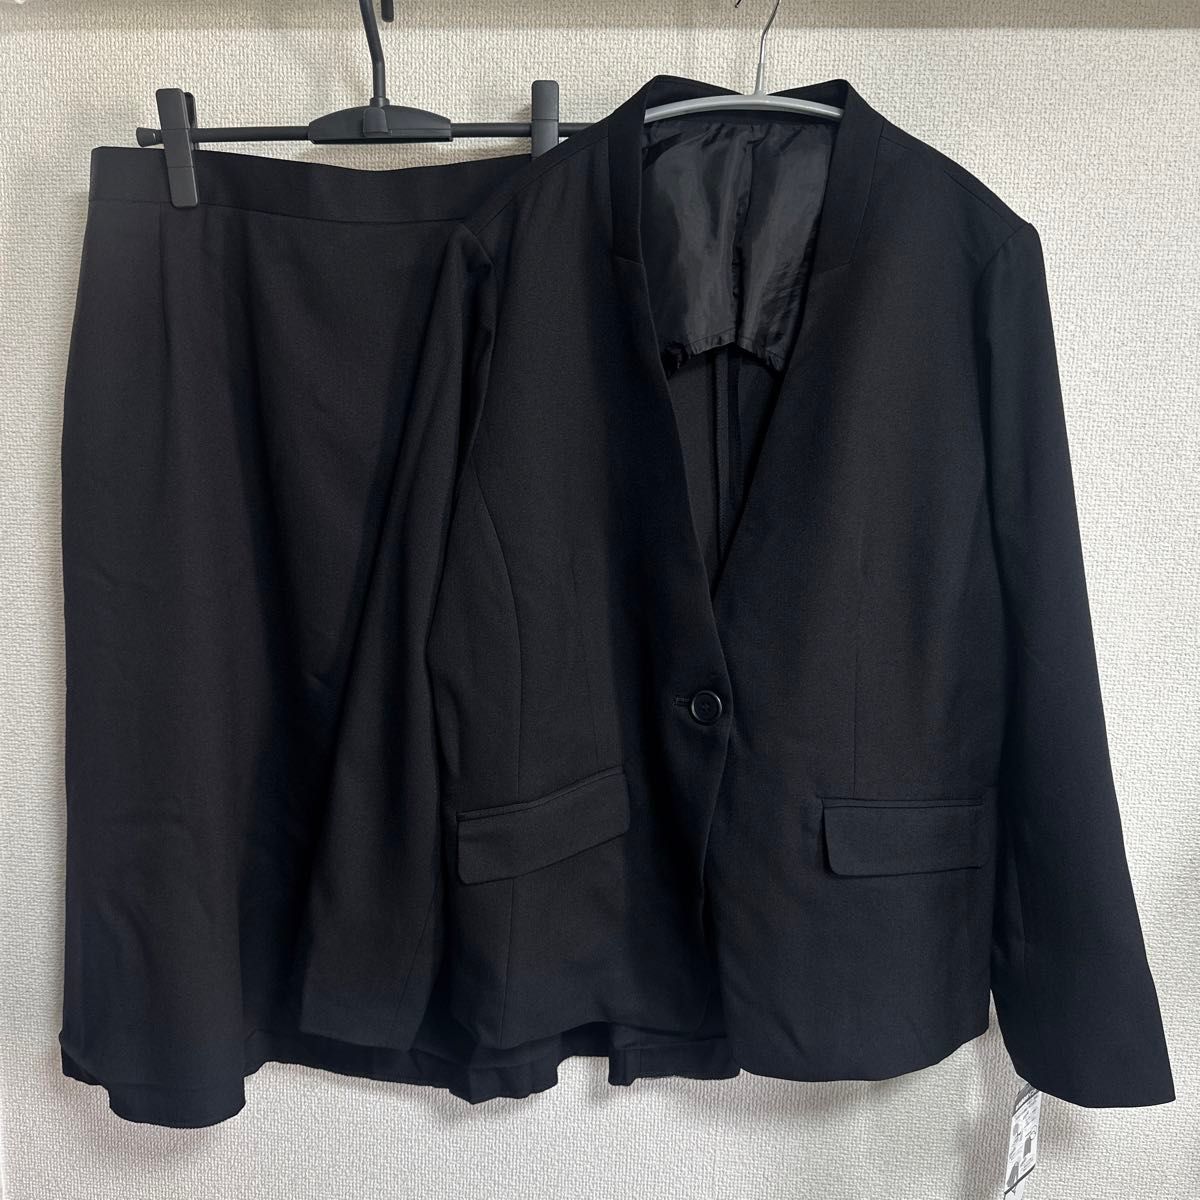 新品未使用品 LLサイズ スカートスーツ 上下セット ブラック 大きいサイズ セットアップ スカート スーツ 黒